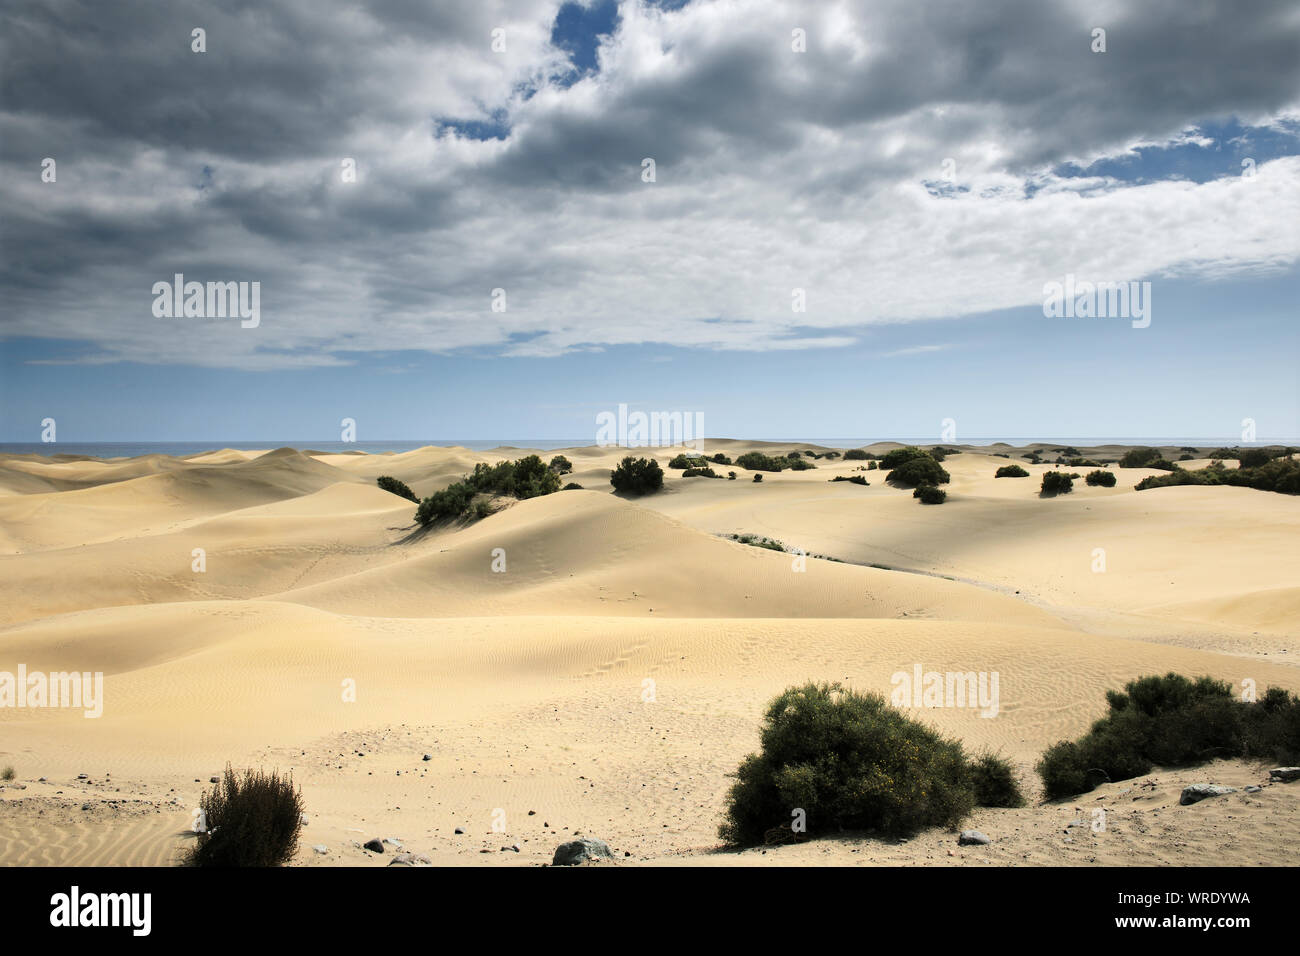 Réserve naturelle de dunes de sable de Maspalomas. Gran Canaria, îles Canaries. Espagne Banque D'Images